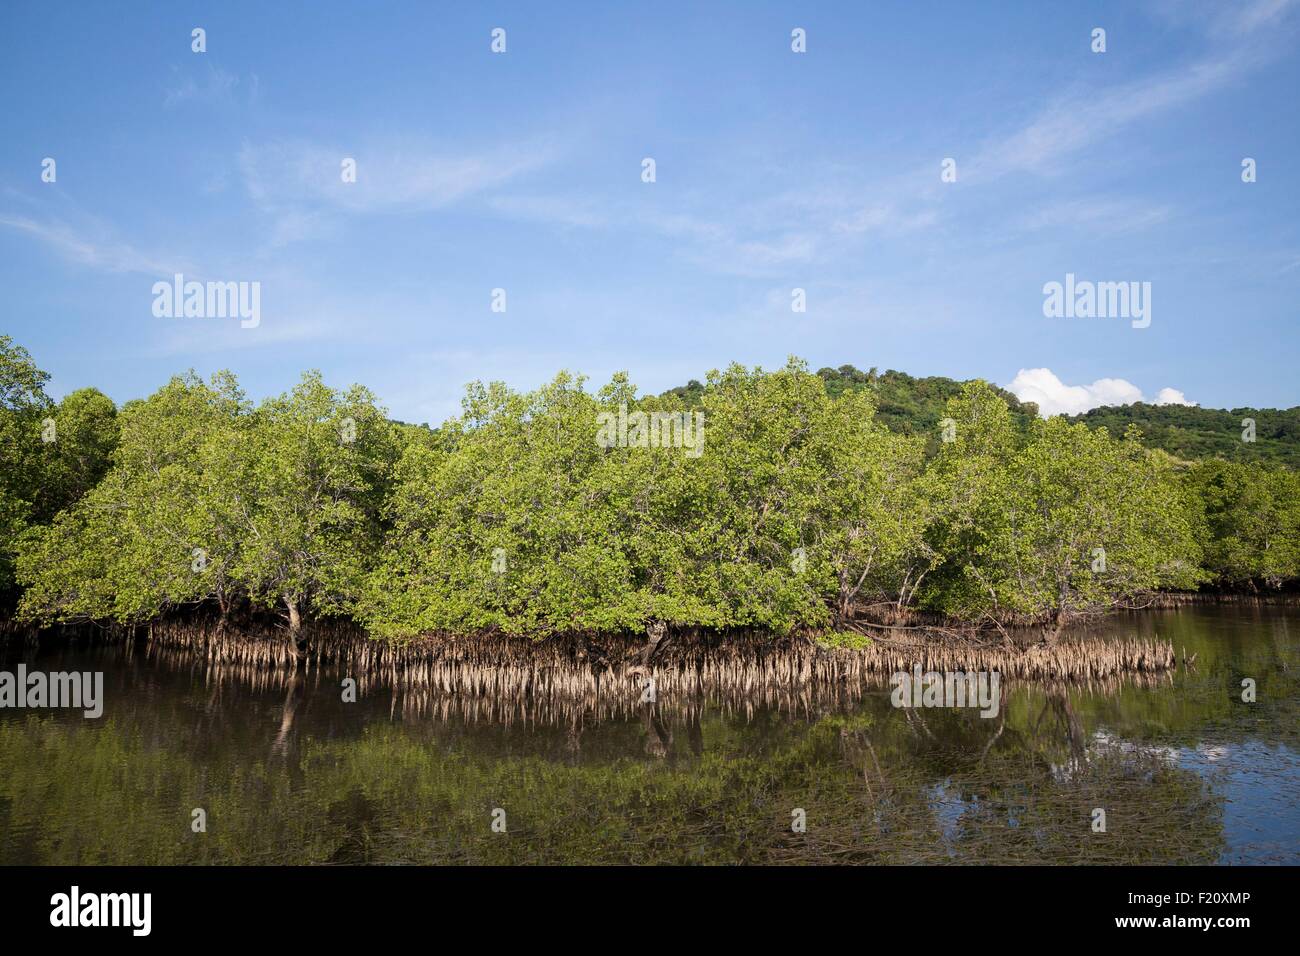 Indonesien, kleinen Sunda-Inseln, Alor Archipel, Insel Pantar, Kabir, Mangroven, umgeben von ihren Luftwurzeln Stockfoto